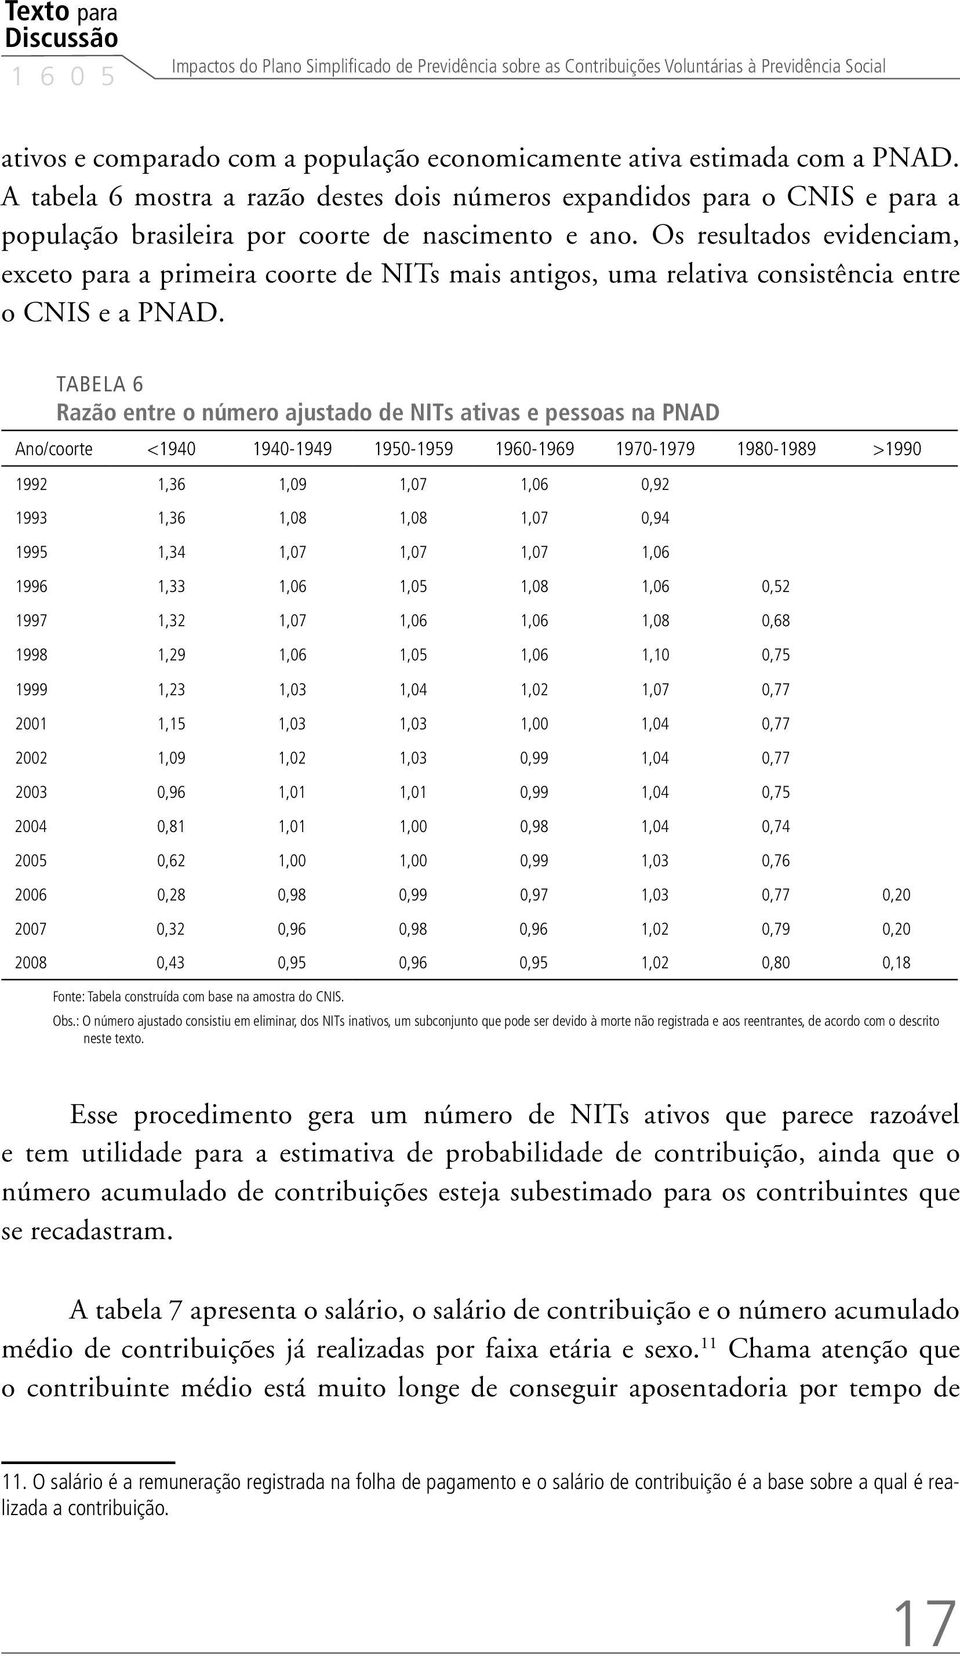 Os resultados evidenciam, exceto para a primeira coorte de NITs mais antigos, uma relativa consistência entre o CNIS e a PNAD.